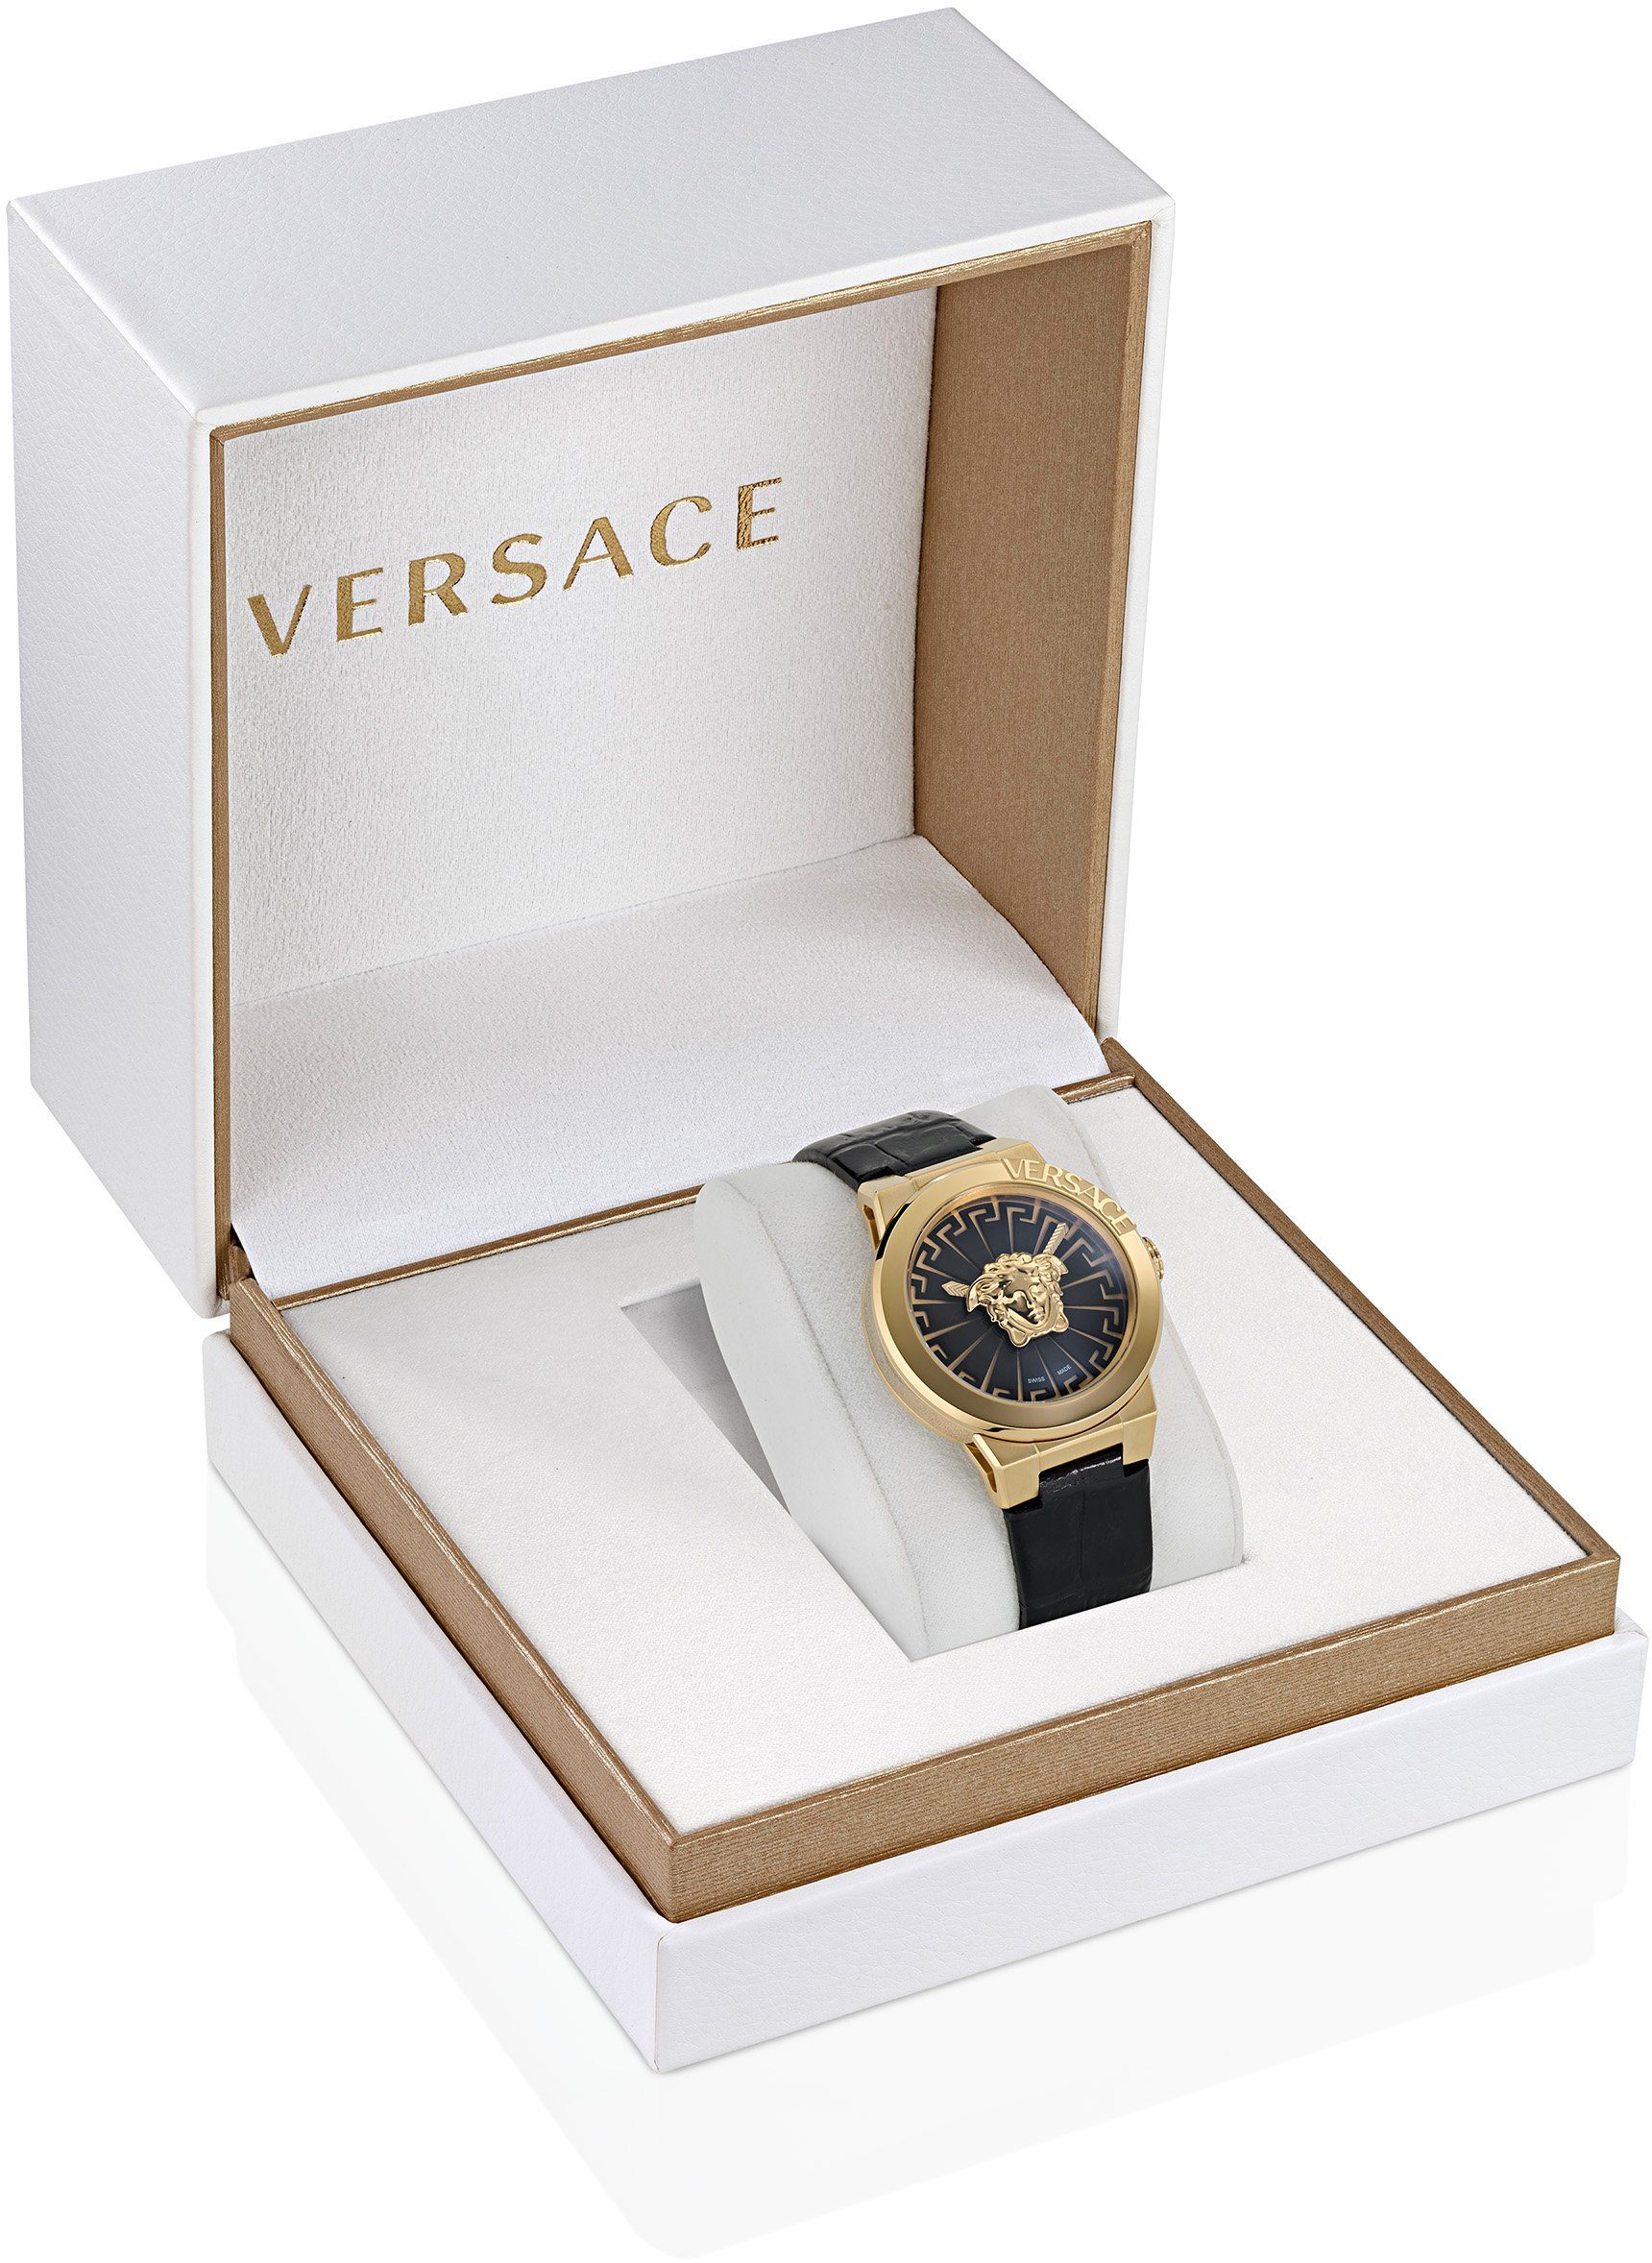 VE3F00222 MEDUSA Schweizer Versace INFINITE, Uhr